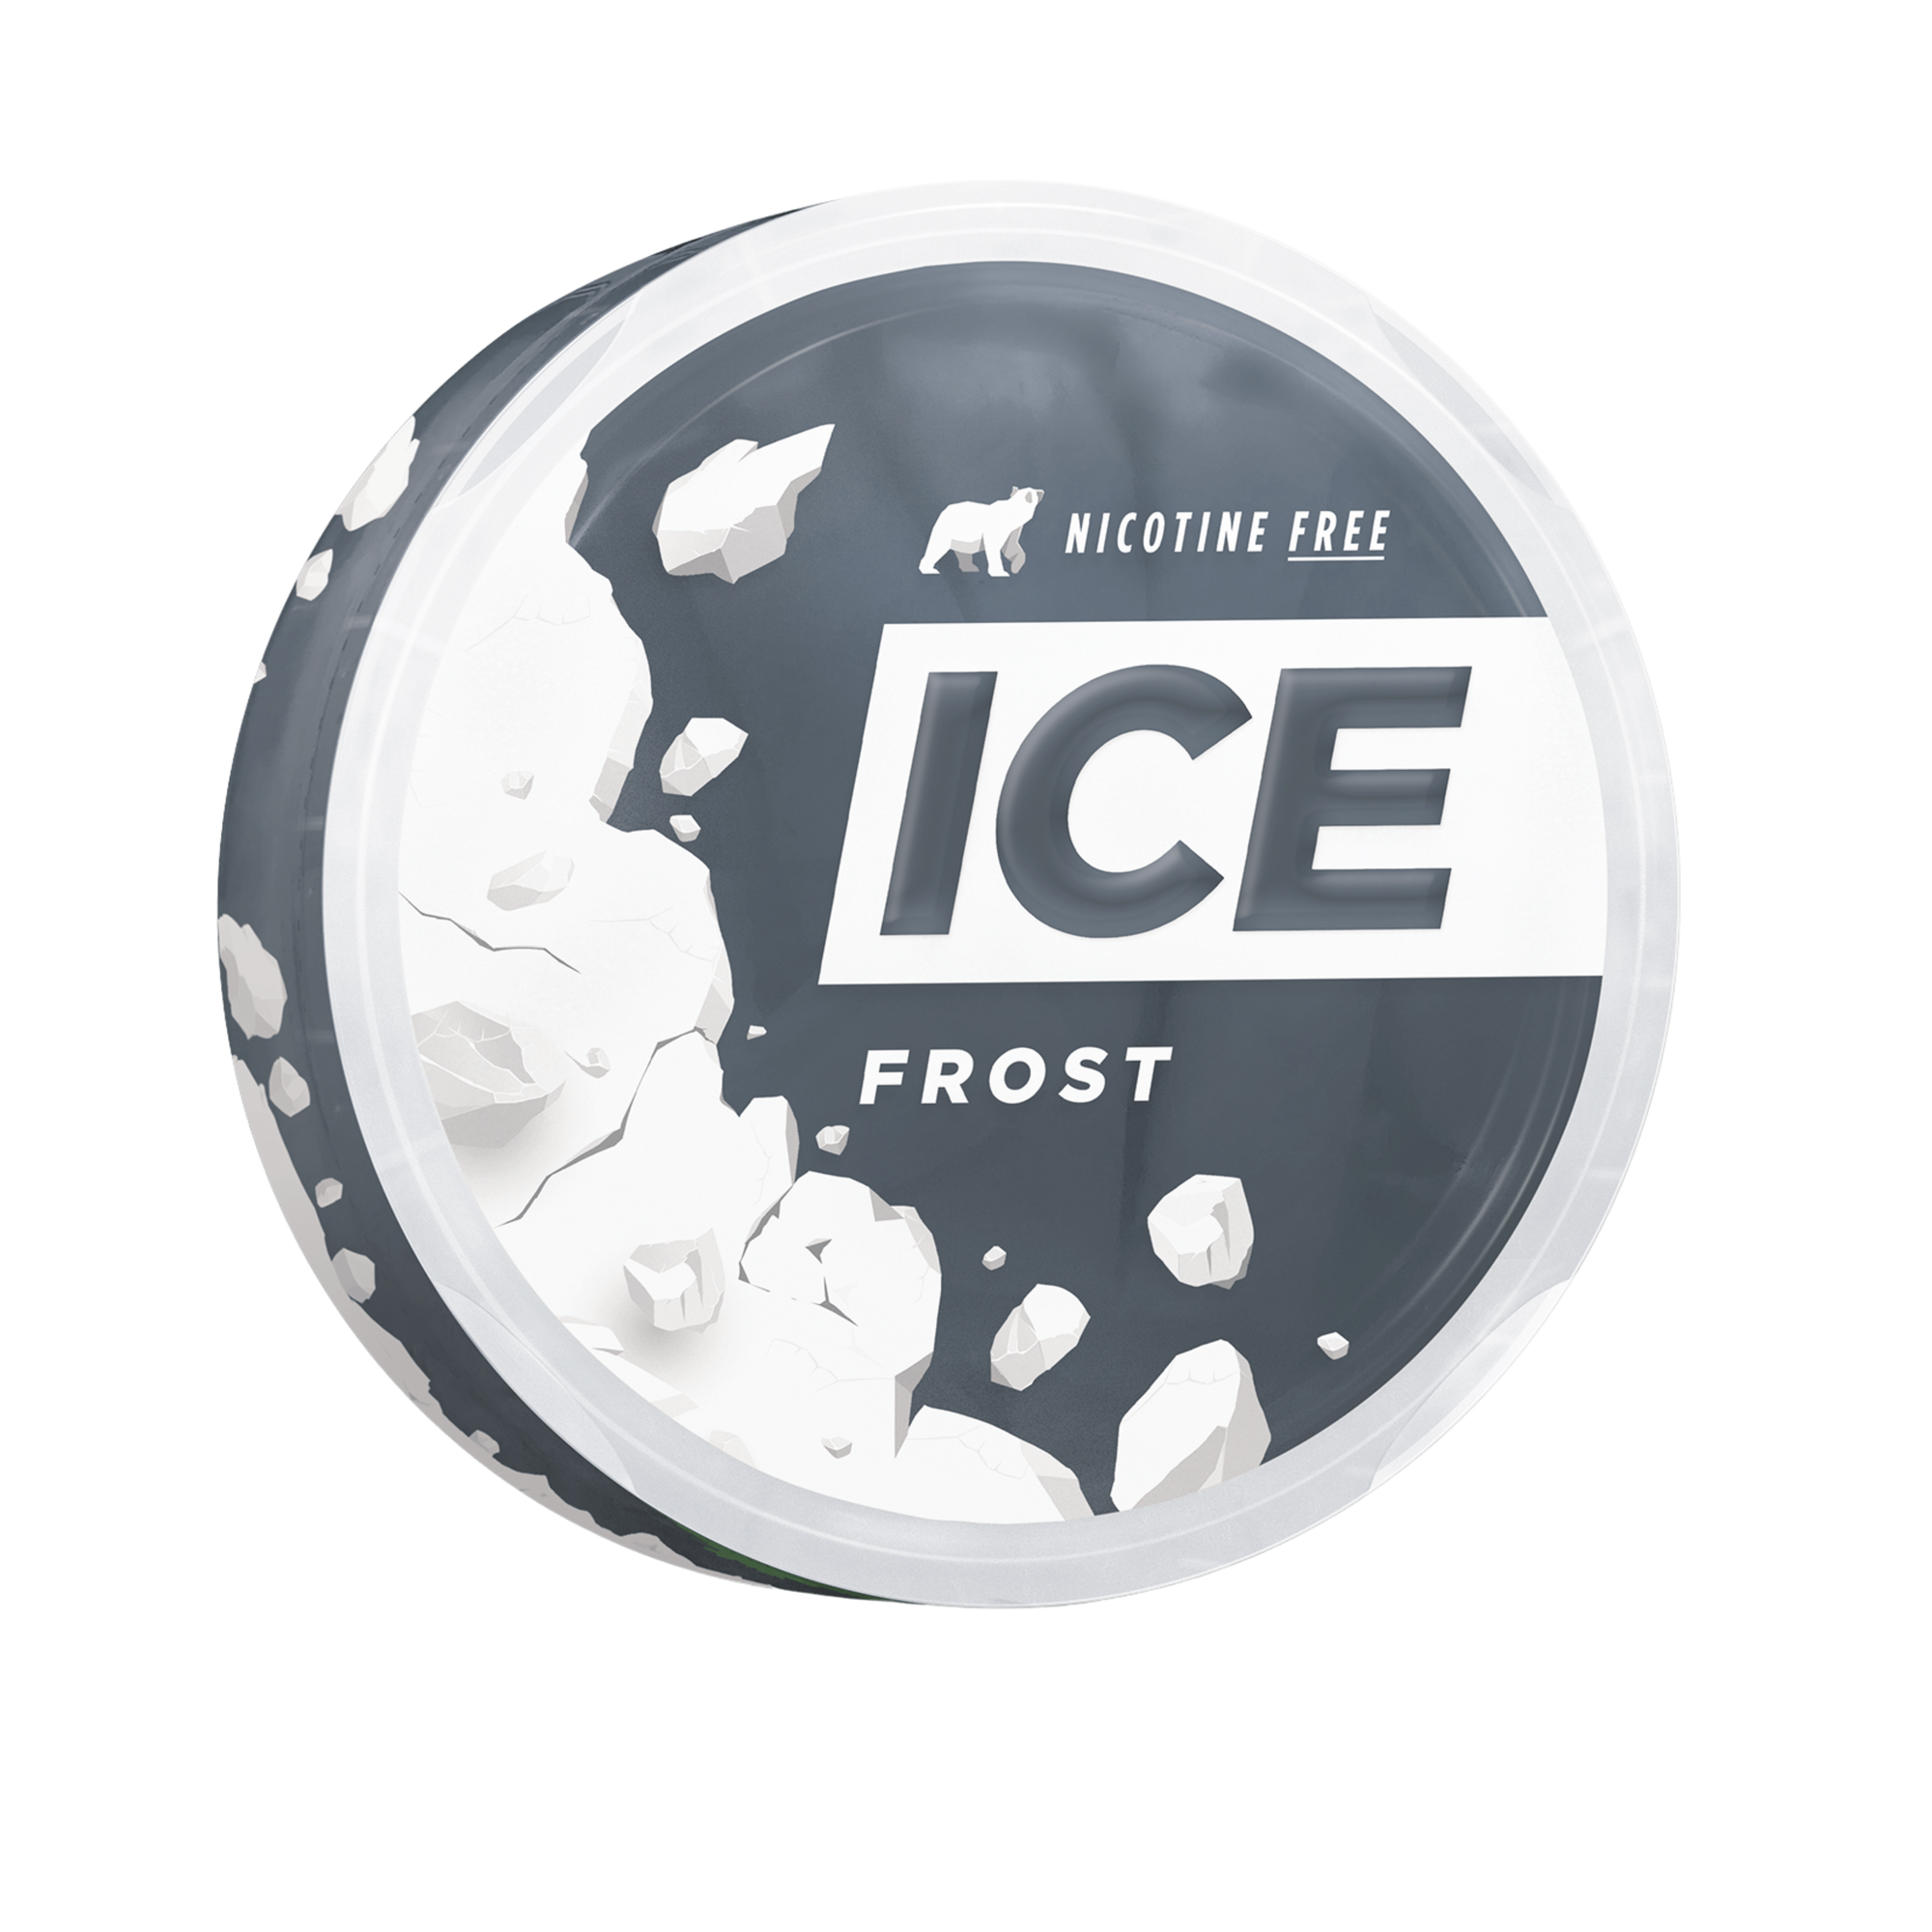 ICE FROST ZERO - Nammi.net